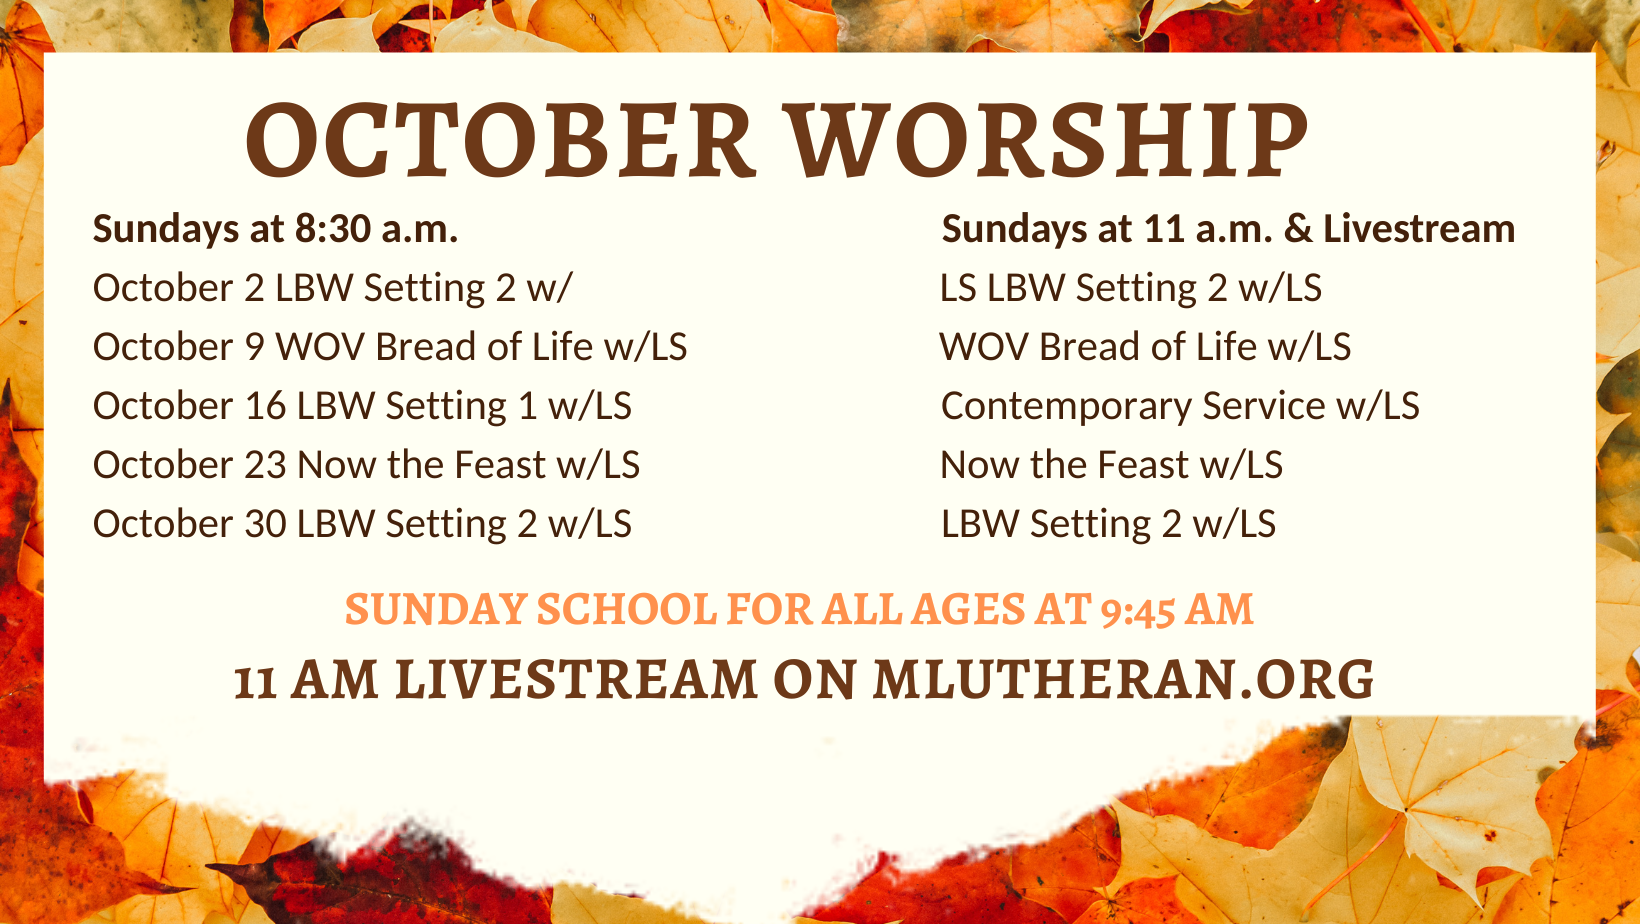 October Worship Schedule